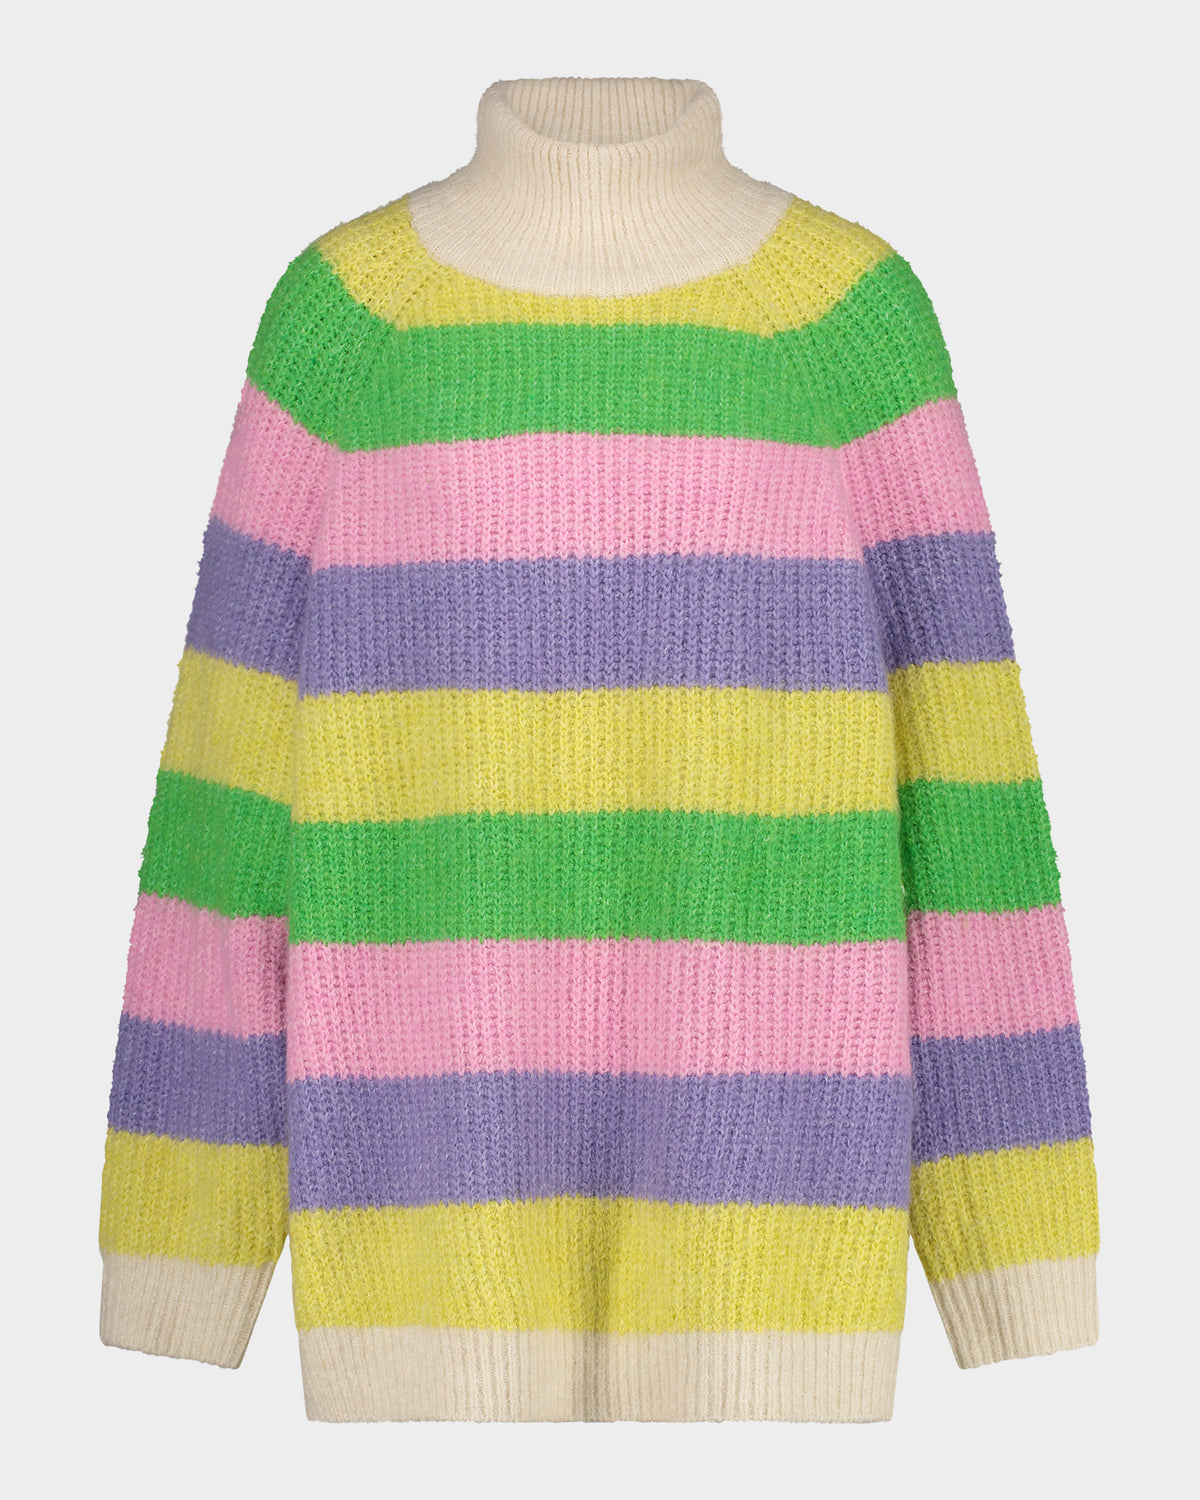 Merida Knitted Sweater